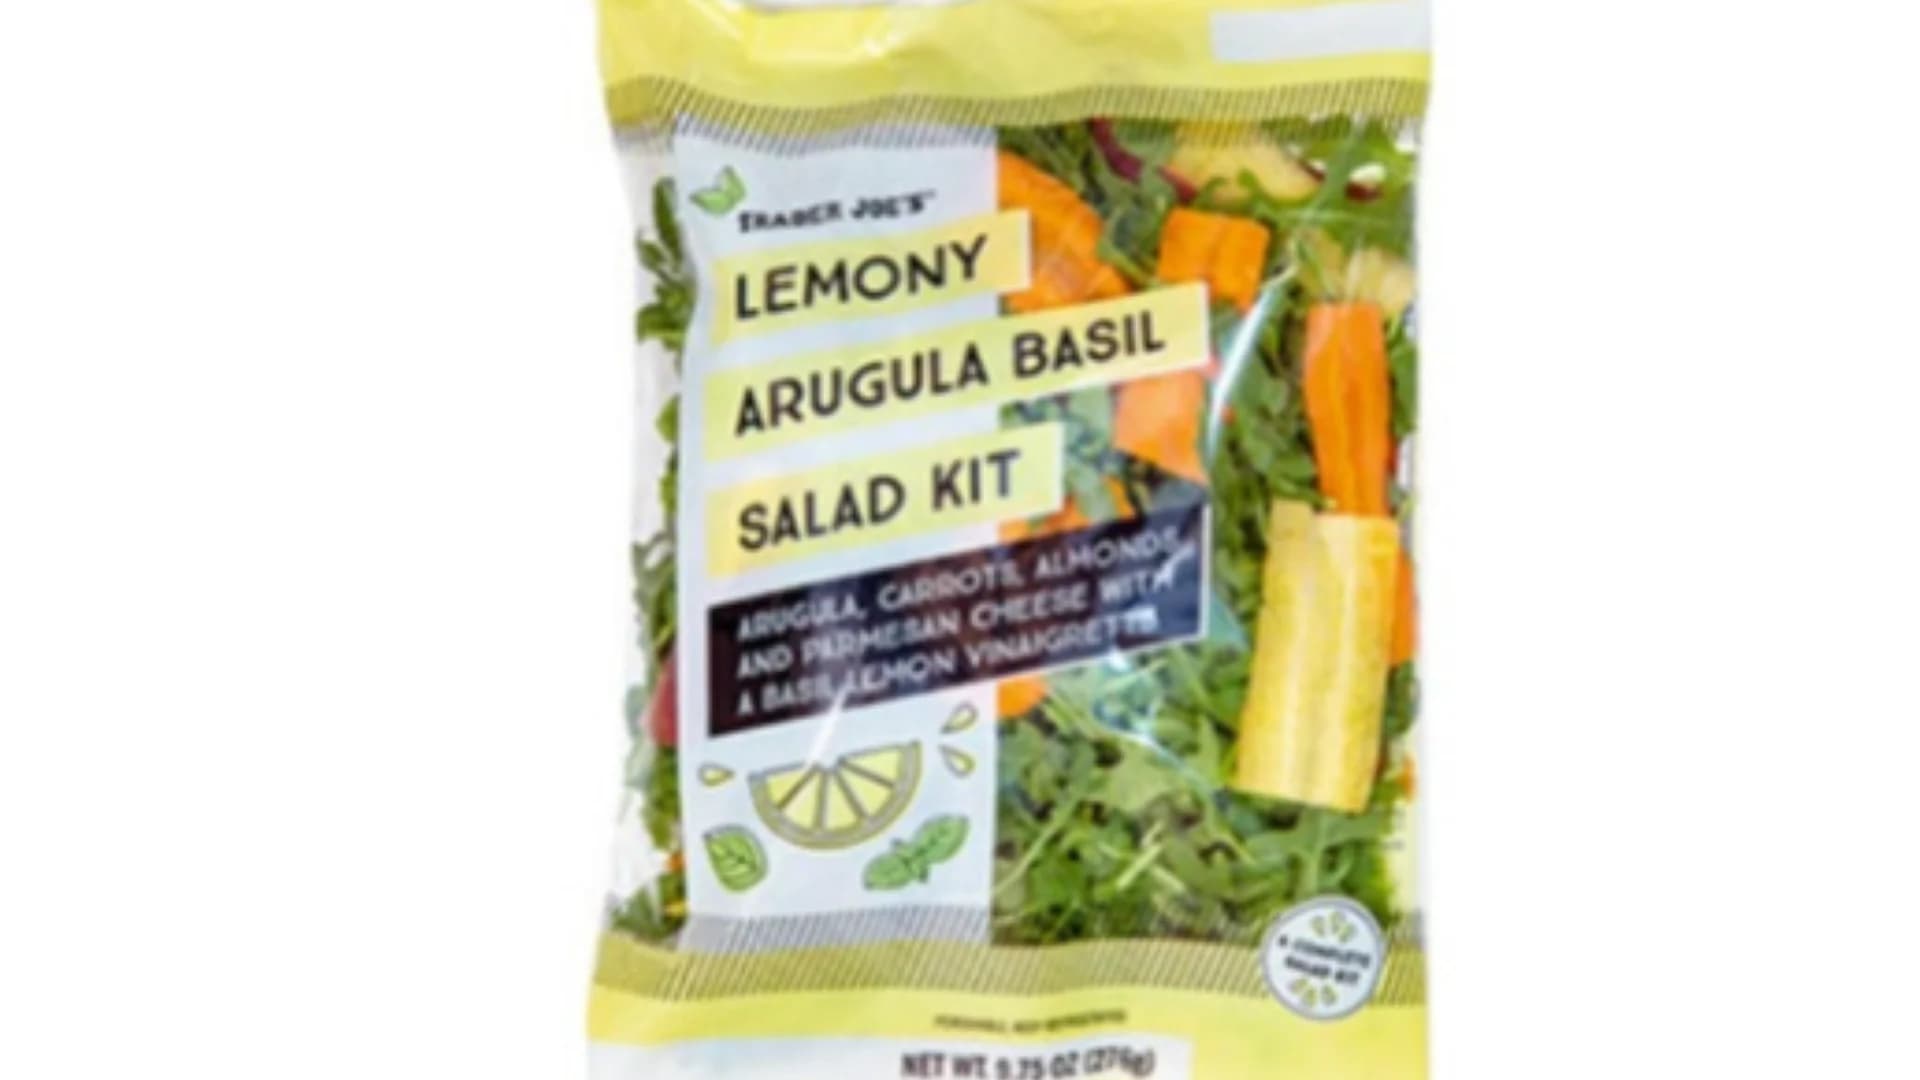 Recall Alert: Trader Joe’s says it’s Lemony Arugula Basil Salad Kit may cause adverse reaction